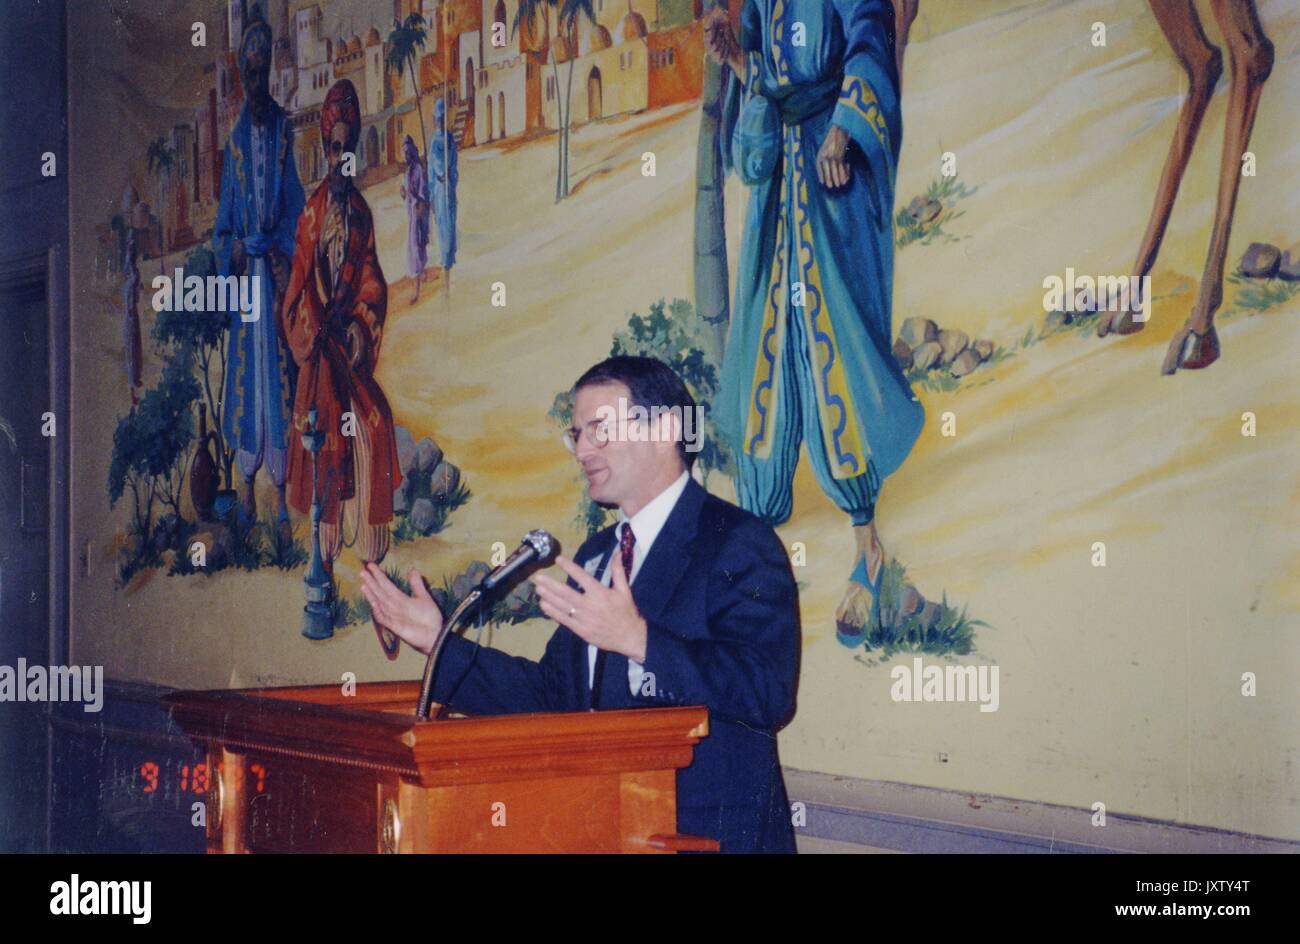 William Ralph Brody, debout sur l'estrade en donnant la parole, vue de côté, jusqu'à la taille, 1997. Banque D'Images